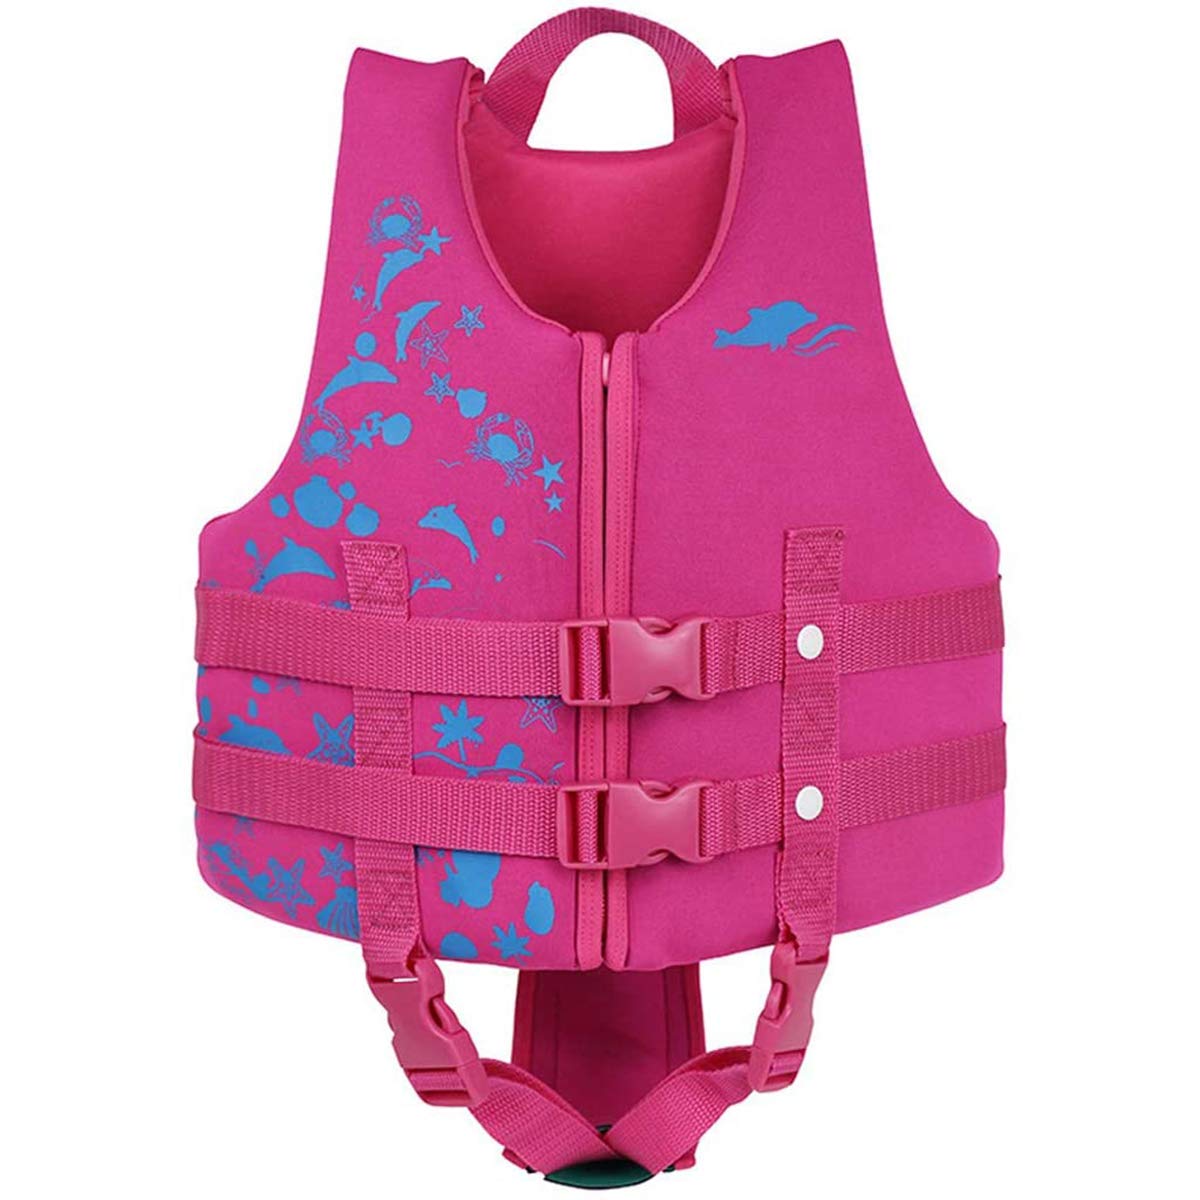 Schwimmanzug Badebekleidung für Kinder Schwimmjacke mit verstellbarem Sicherheitsgurt für Unisex-Kinder, XL, Rosa(9-10 Jahre/35-40KG)